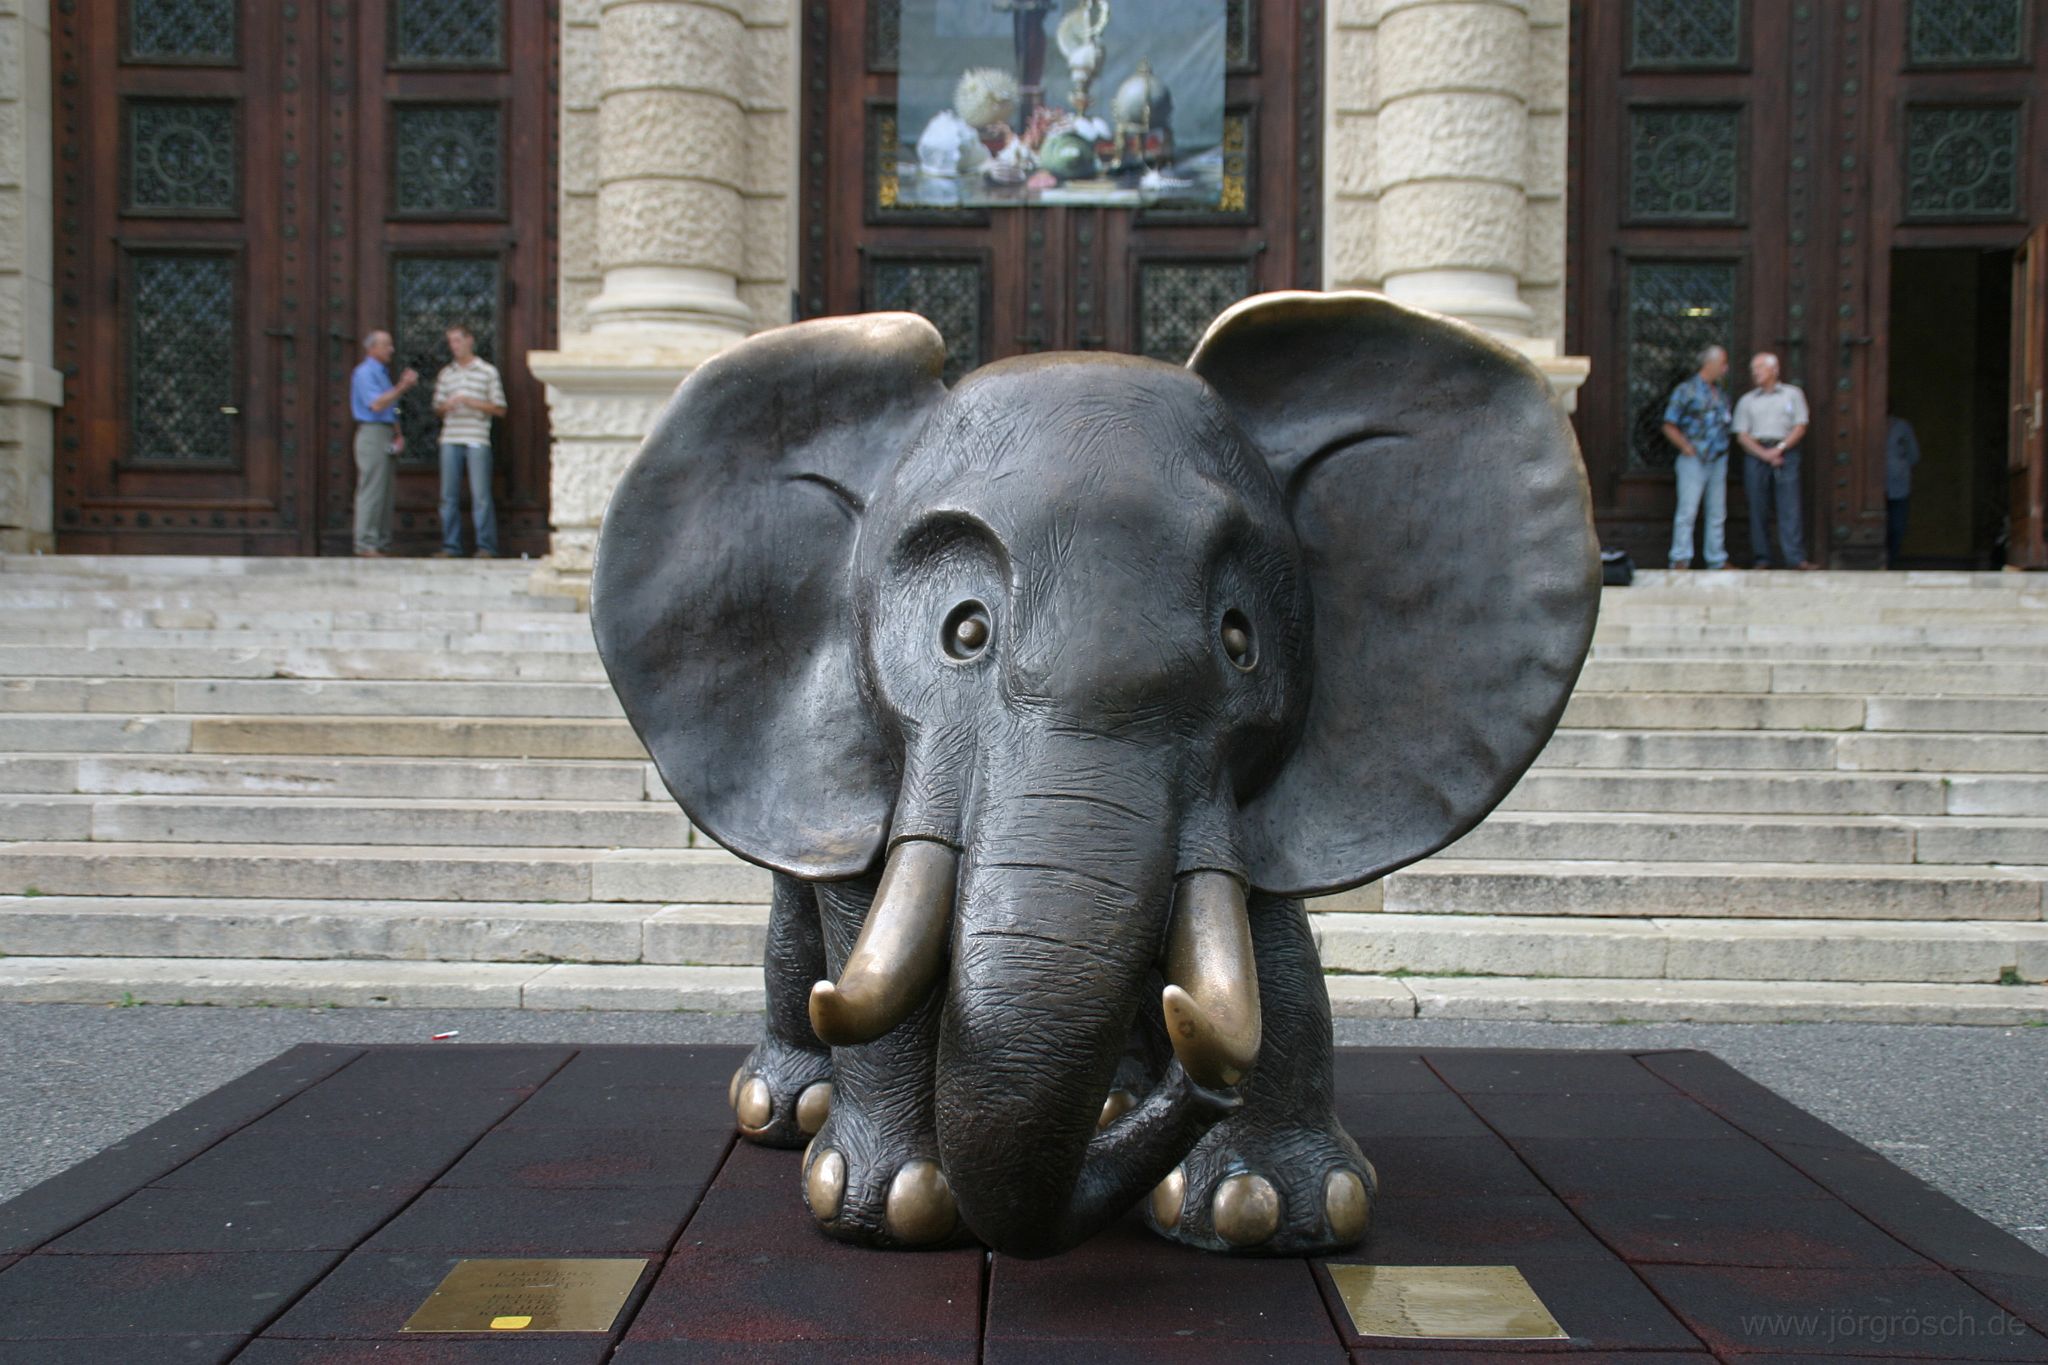 200706 wienelefant.jpg - Elefant vor dem Naturhistorischen Museum in Wien